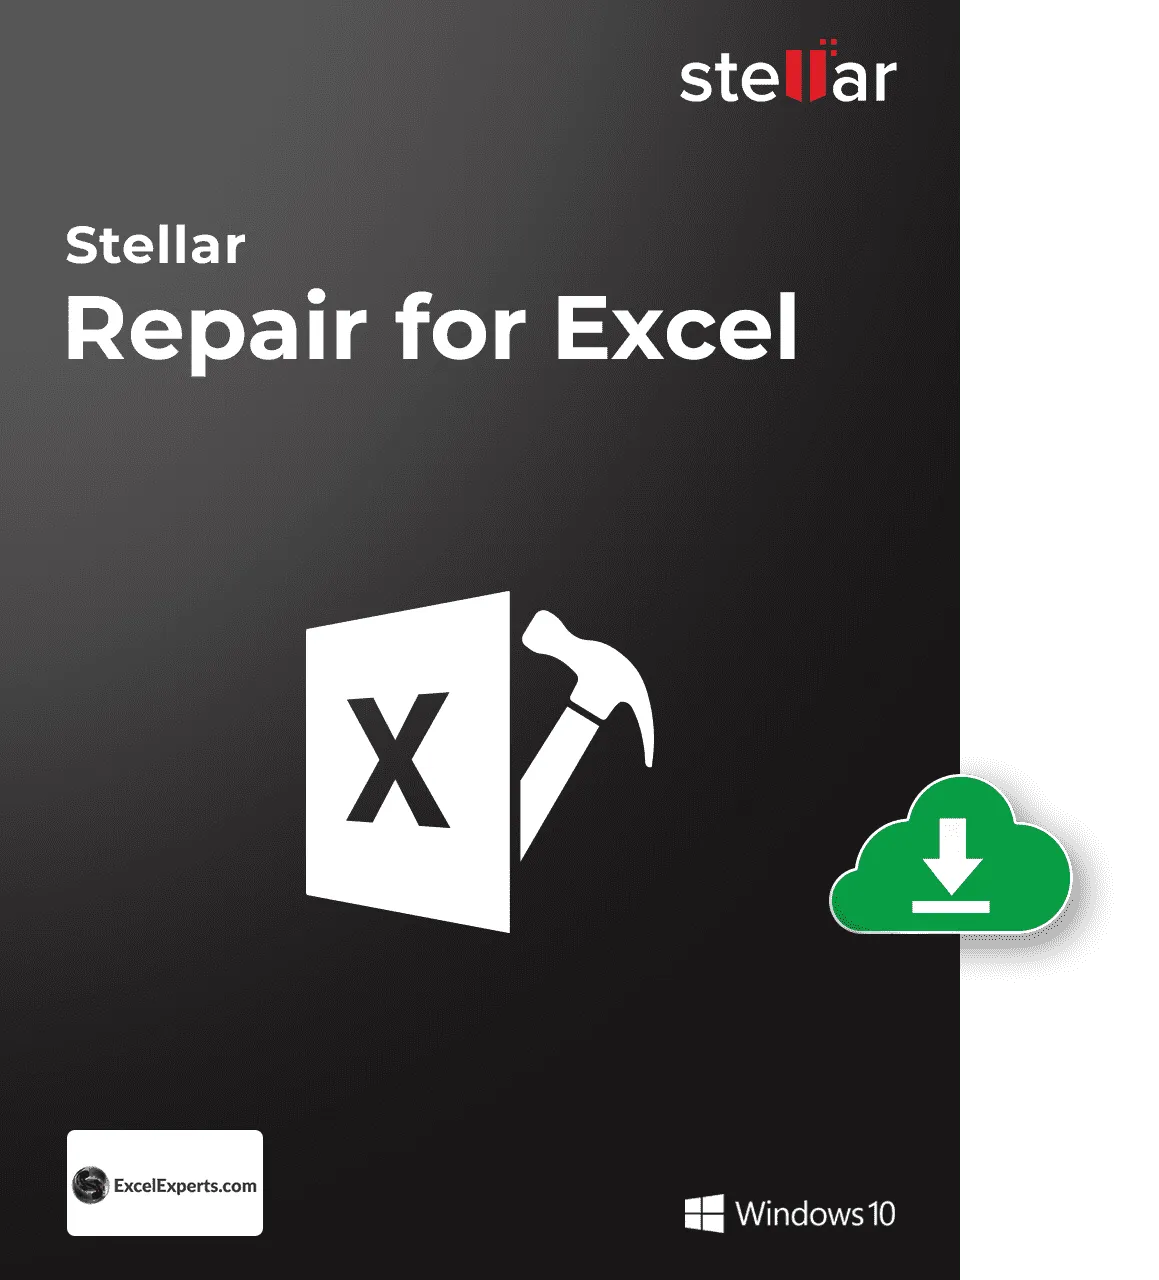  Repair for Excel